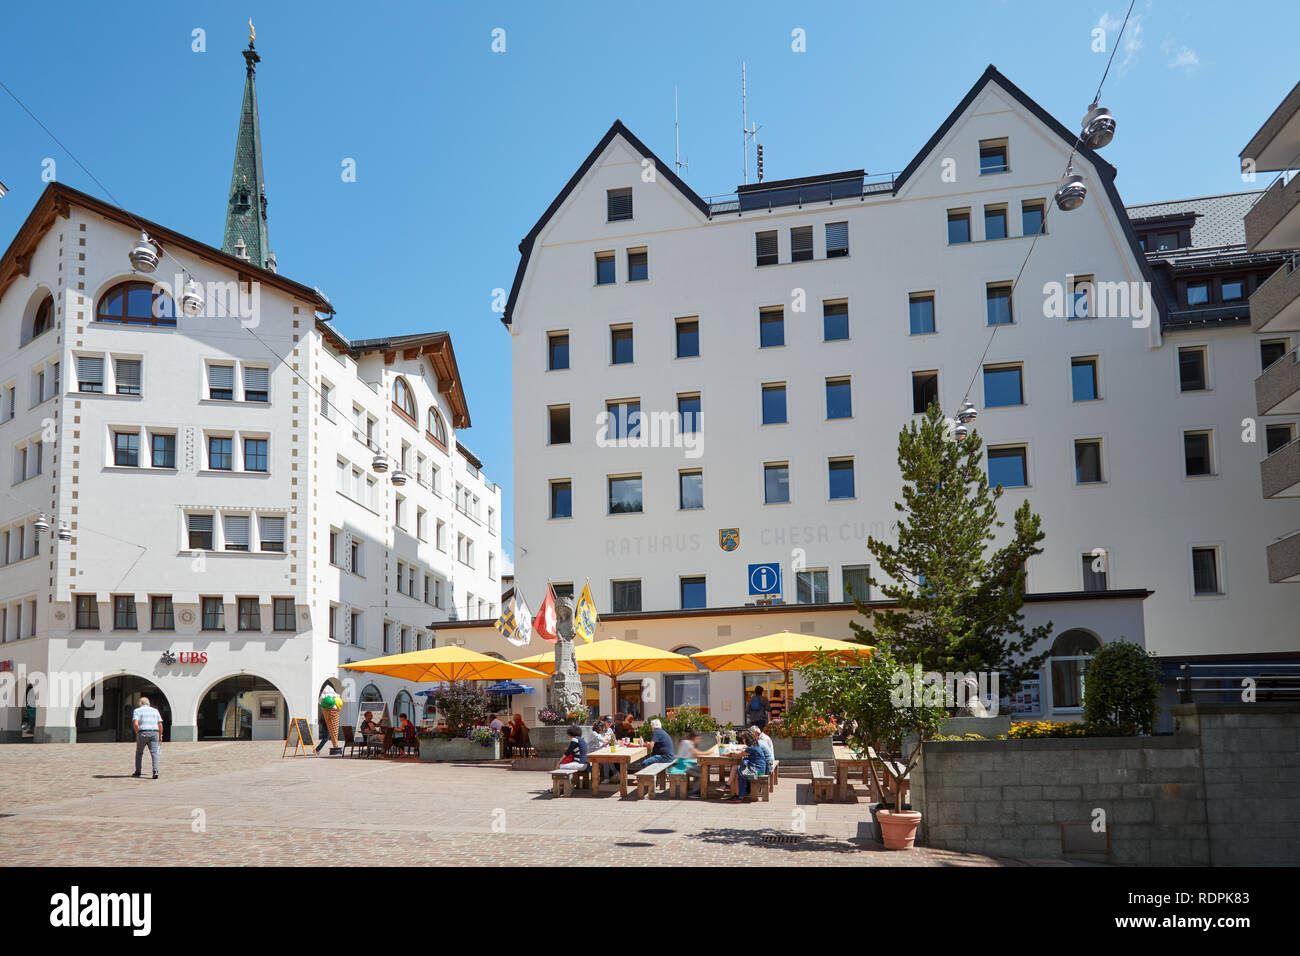 SANKT MORITZ, Suisse - le 16 août 2018 : Centre Ville avec trottoir tables, parasols jaunes et des personnes dans un jour d'été ensoleillé à Sankt Moritz, Suisse Banque D'Images